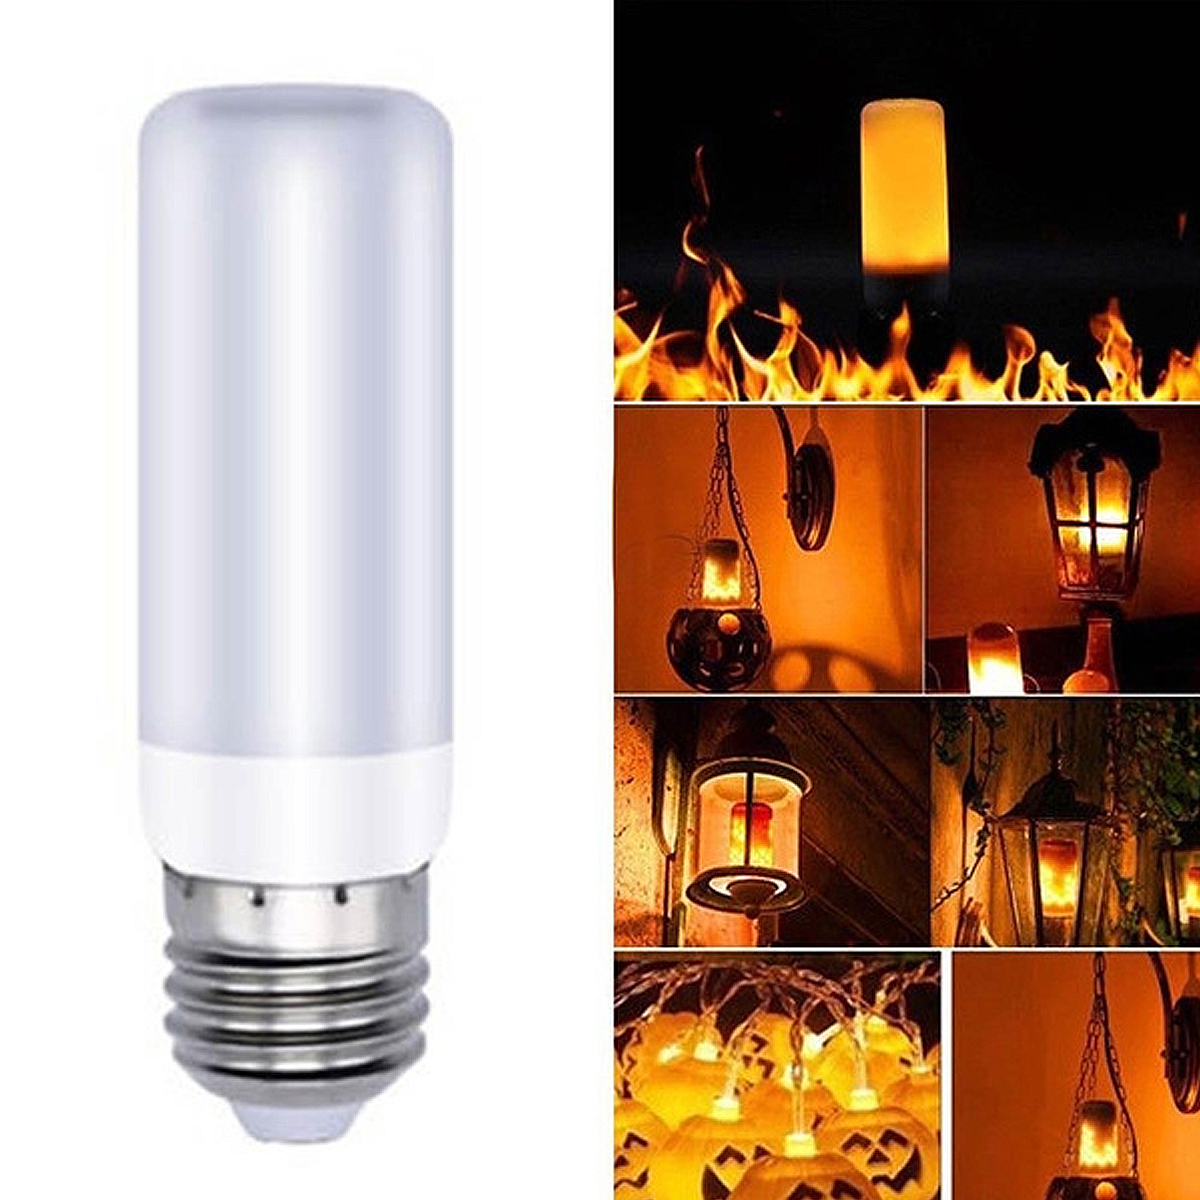 4-Modes-78LED-Flame-Effect-Fire-Light-Bulb-Gravity-Sensor-Lamp-Flickering-Bulb-Lamp-Garden-Lighting--1806214-9